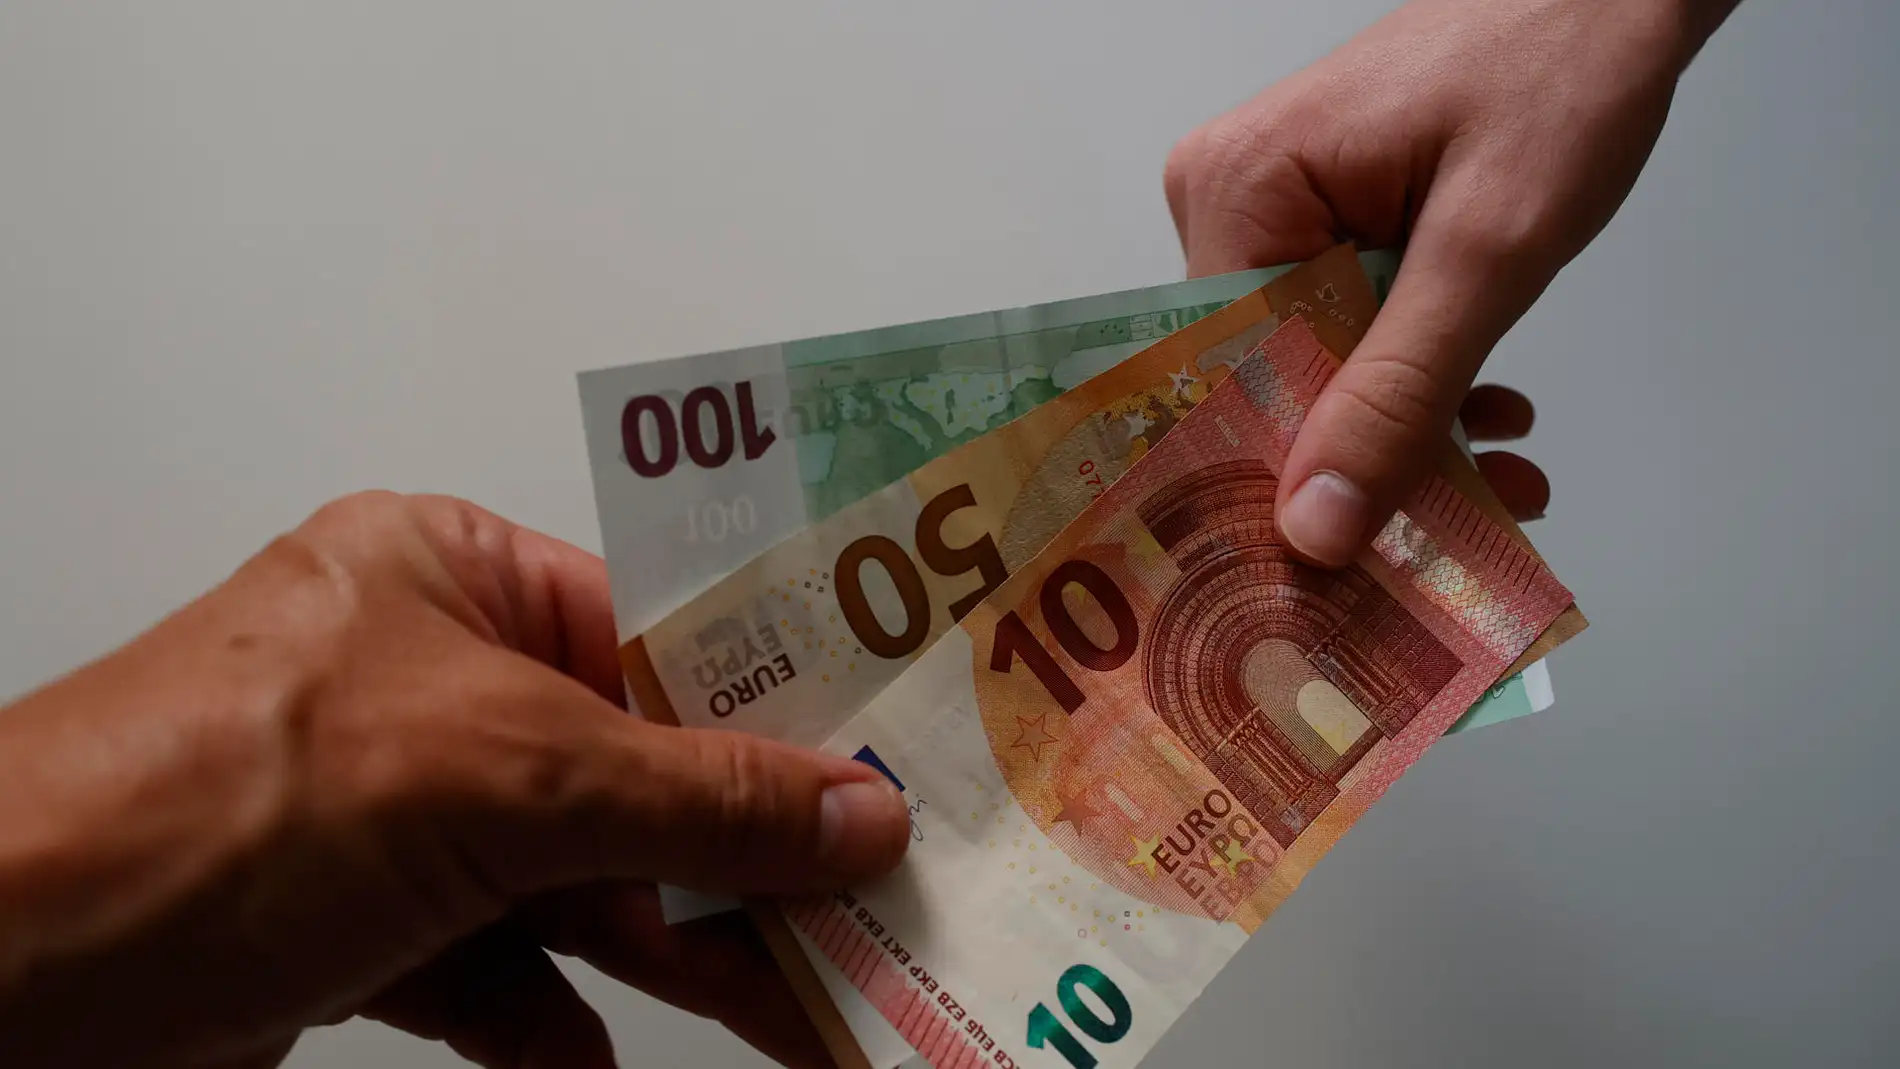 Neurociencia aplicada a billetes de euro: un proyecto estudia cómo hacerlos más atractivos